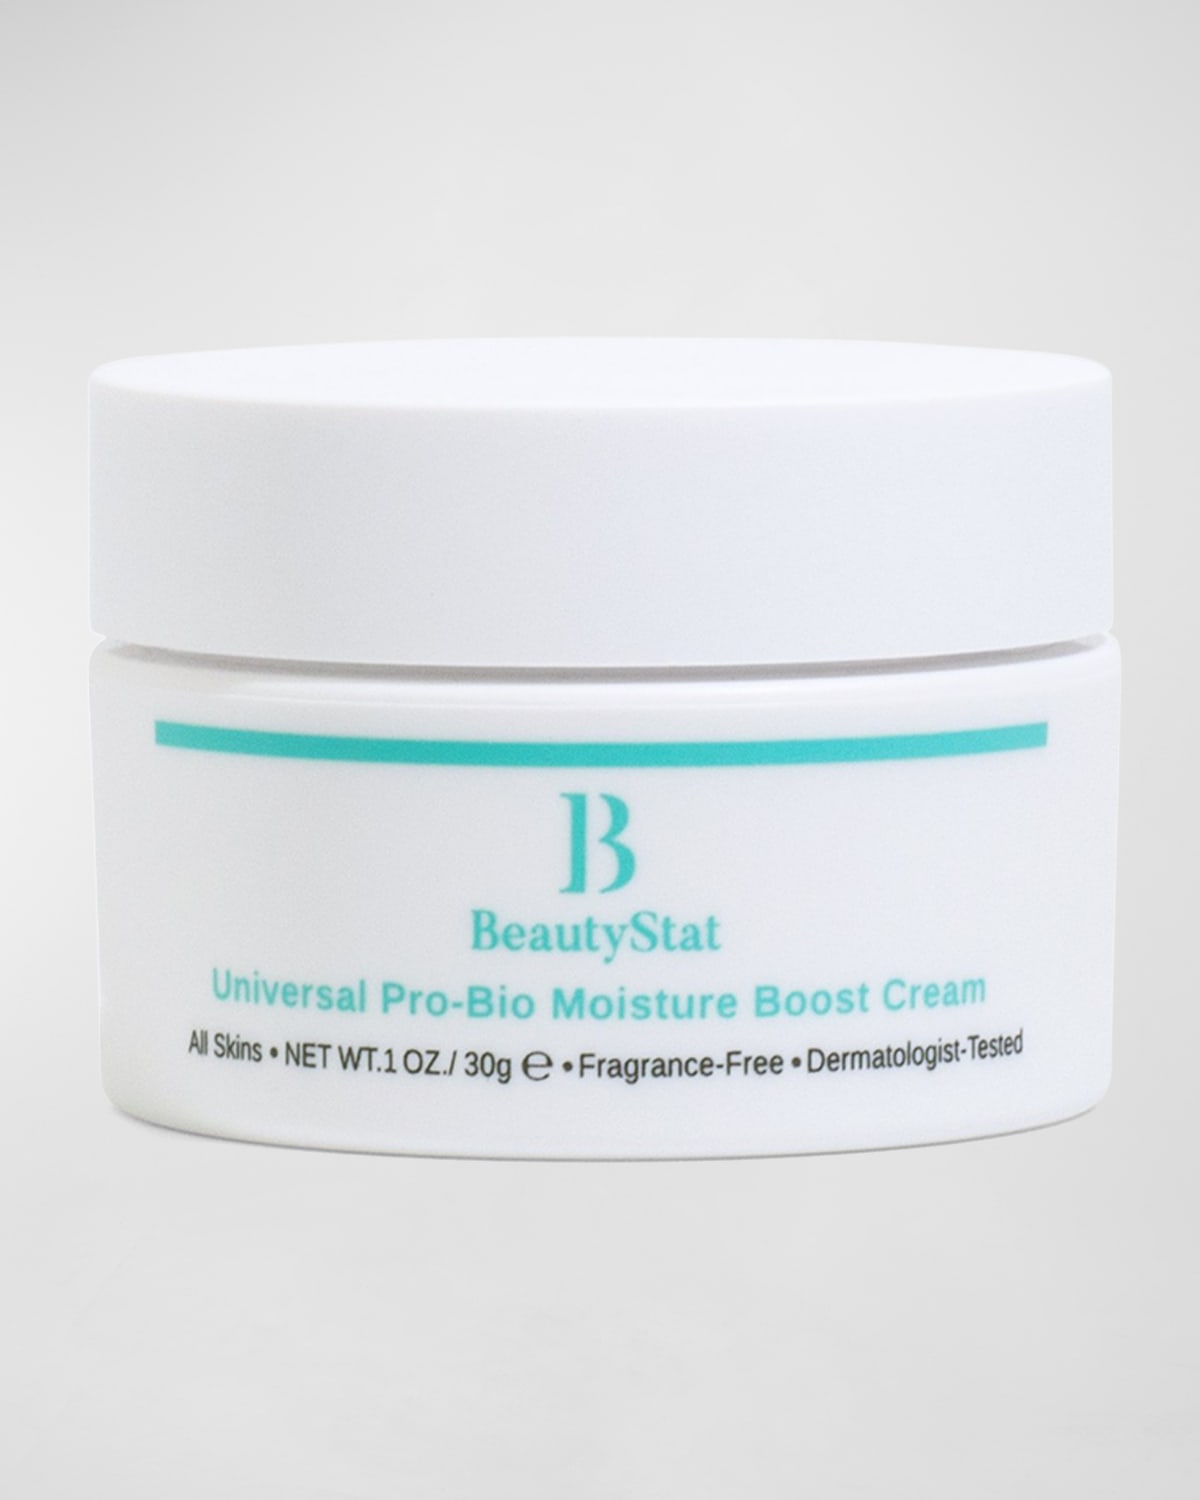 Universal Pro-Bio Moisture Boost Cream, 1 oz.